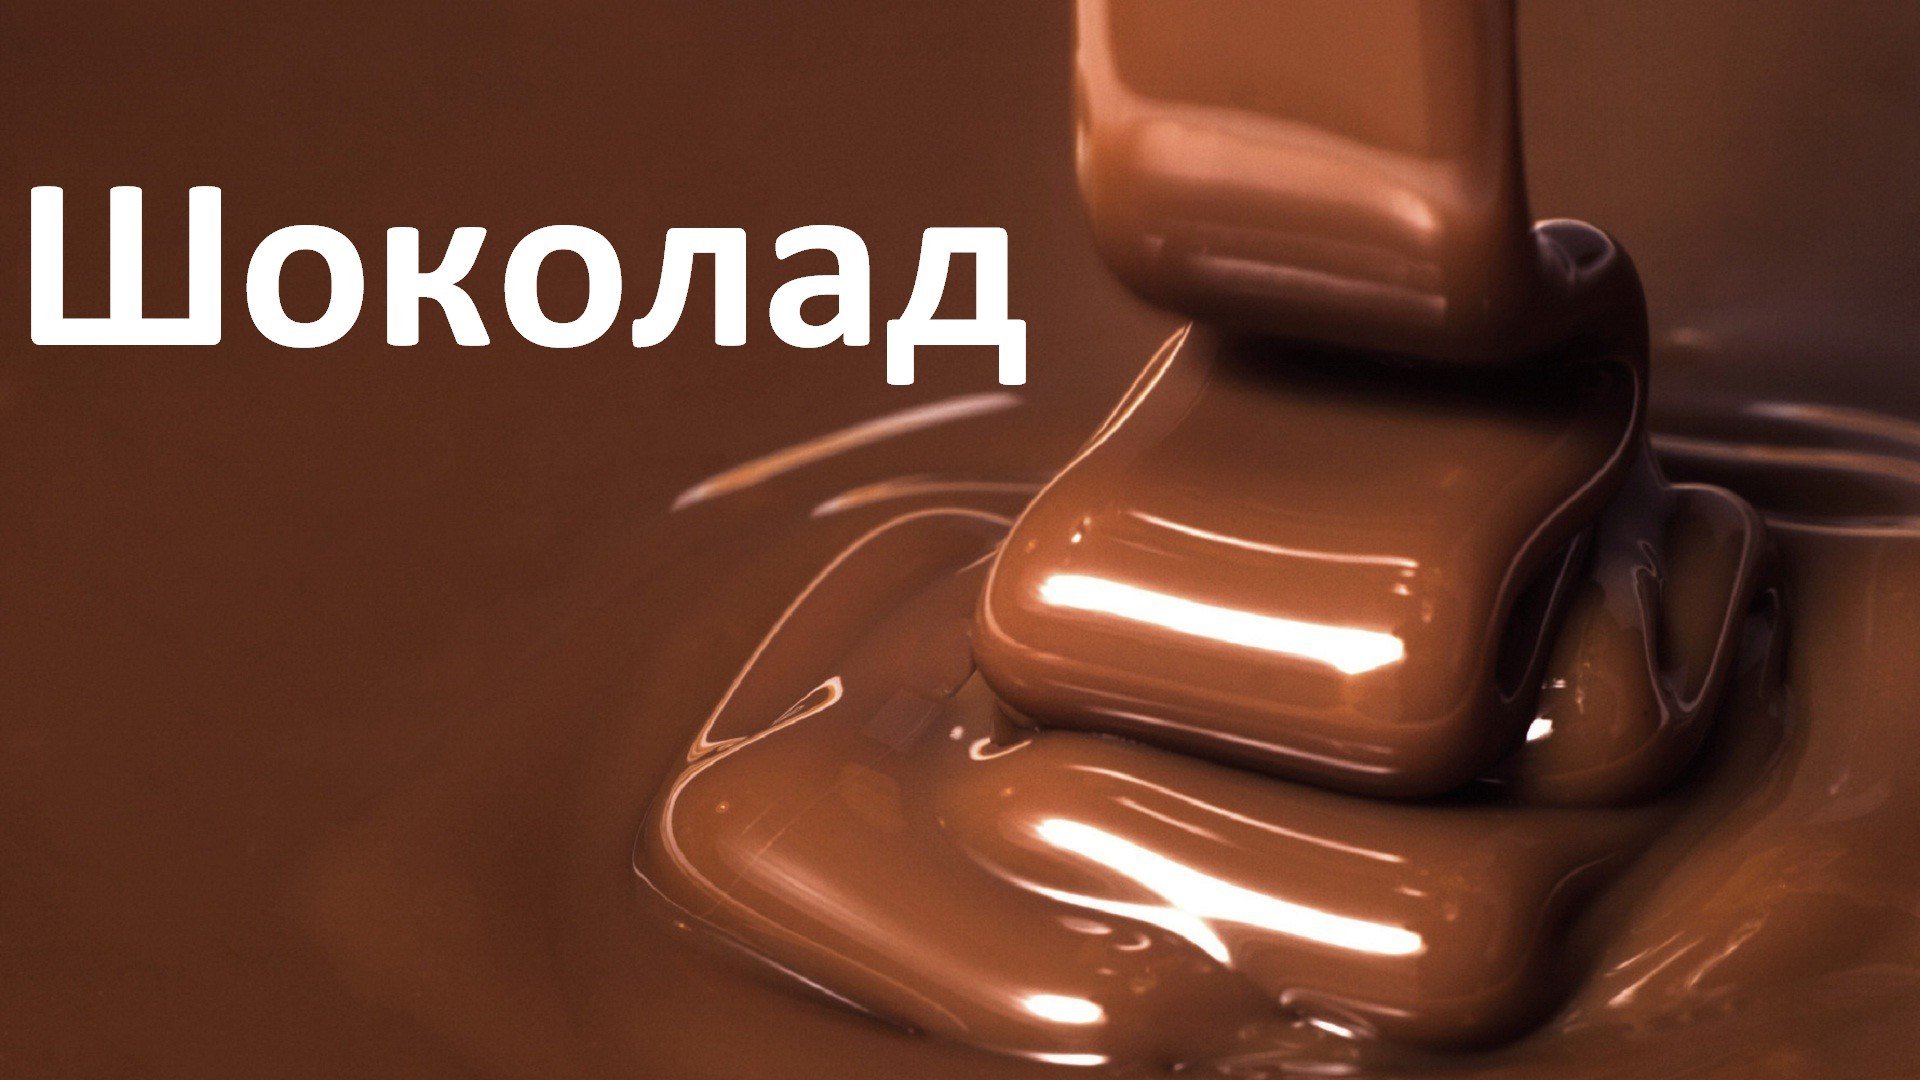 Я бы жила в шоколаде. Шоколад. Жизнь в шоколаде. Всемирный день шоколада. Шоколад фон.